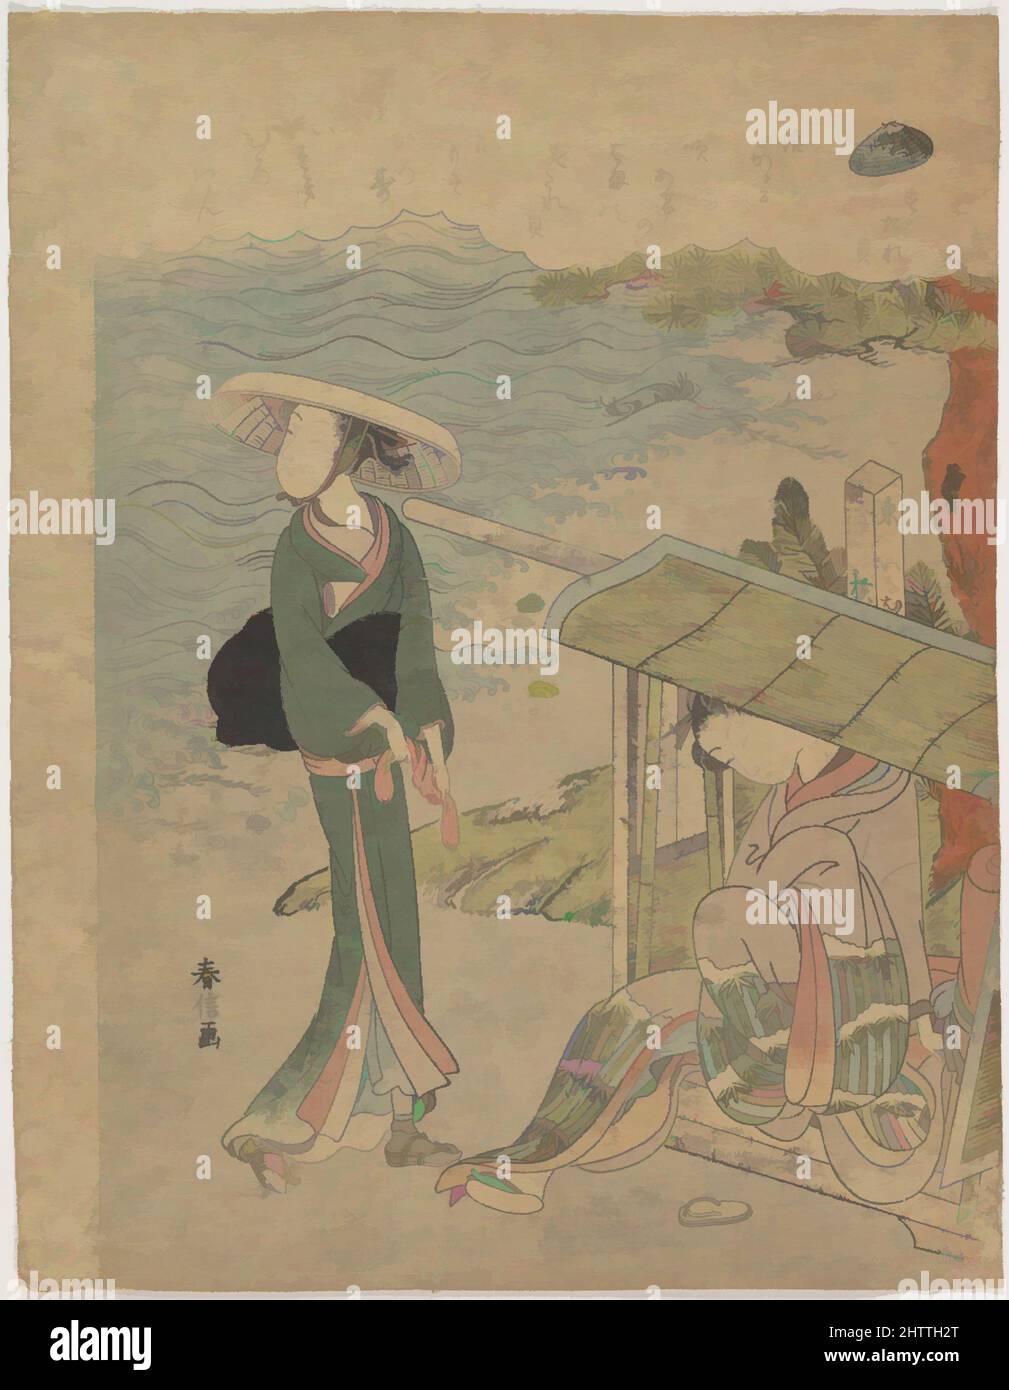 Art inspiré par すだれ貝, The Curtain Clam, époque Edo (1615–1868), Japon, imprimé polychrome sur bois; Encre et couleur sur papier, H. 11 1/4 po. (28,6 cm) ; avec 8 9/16 po (21,7 cm), Prints, Suzuki Harunobu (japonais, 1725–1770), les jeunes femmes sont à la côte. On sort d'une chaise, les œuvres classiques modernisées par Artotop avec une touche de modernité. Formes, couleur et valeur, impact visuel accrocheur sur l'art émotions par la liberté d'œuvres d'art d'une manière contemporaine. Un message intemporel qui cherche une nouvelle direction créative. Artistes qui se tournent vers le support numérique et créent le NFT Artotop Banque D'Images